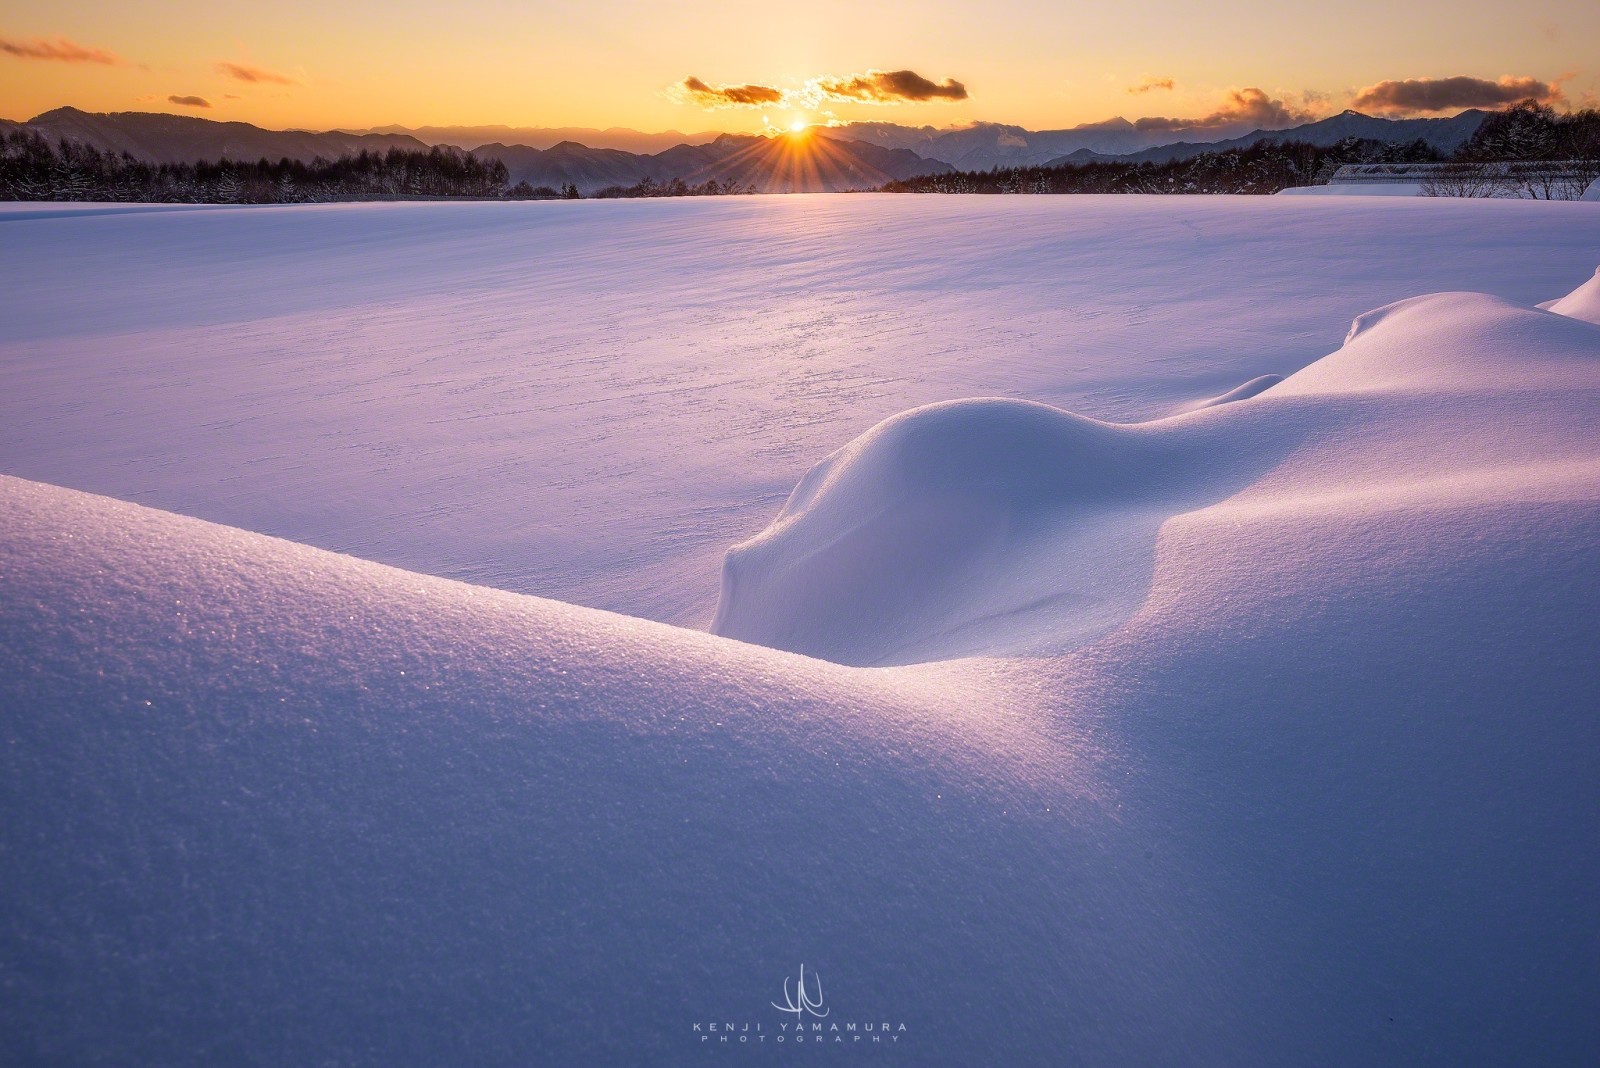 눈, 산, 새벽, 사진 작가, 야마무라 켄지